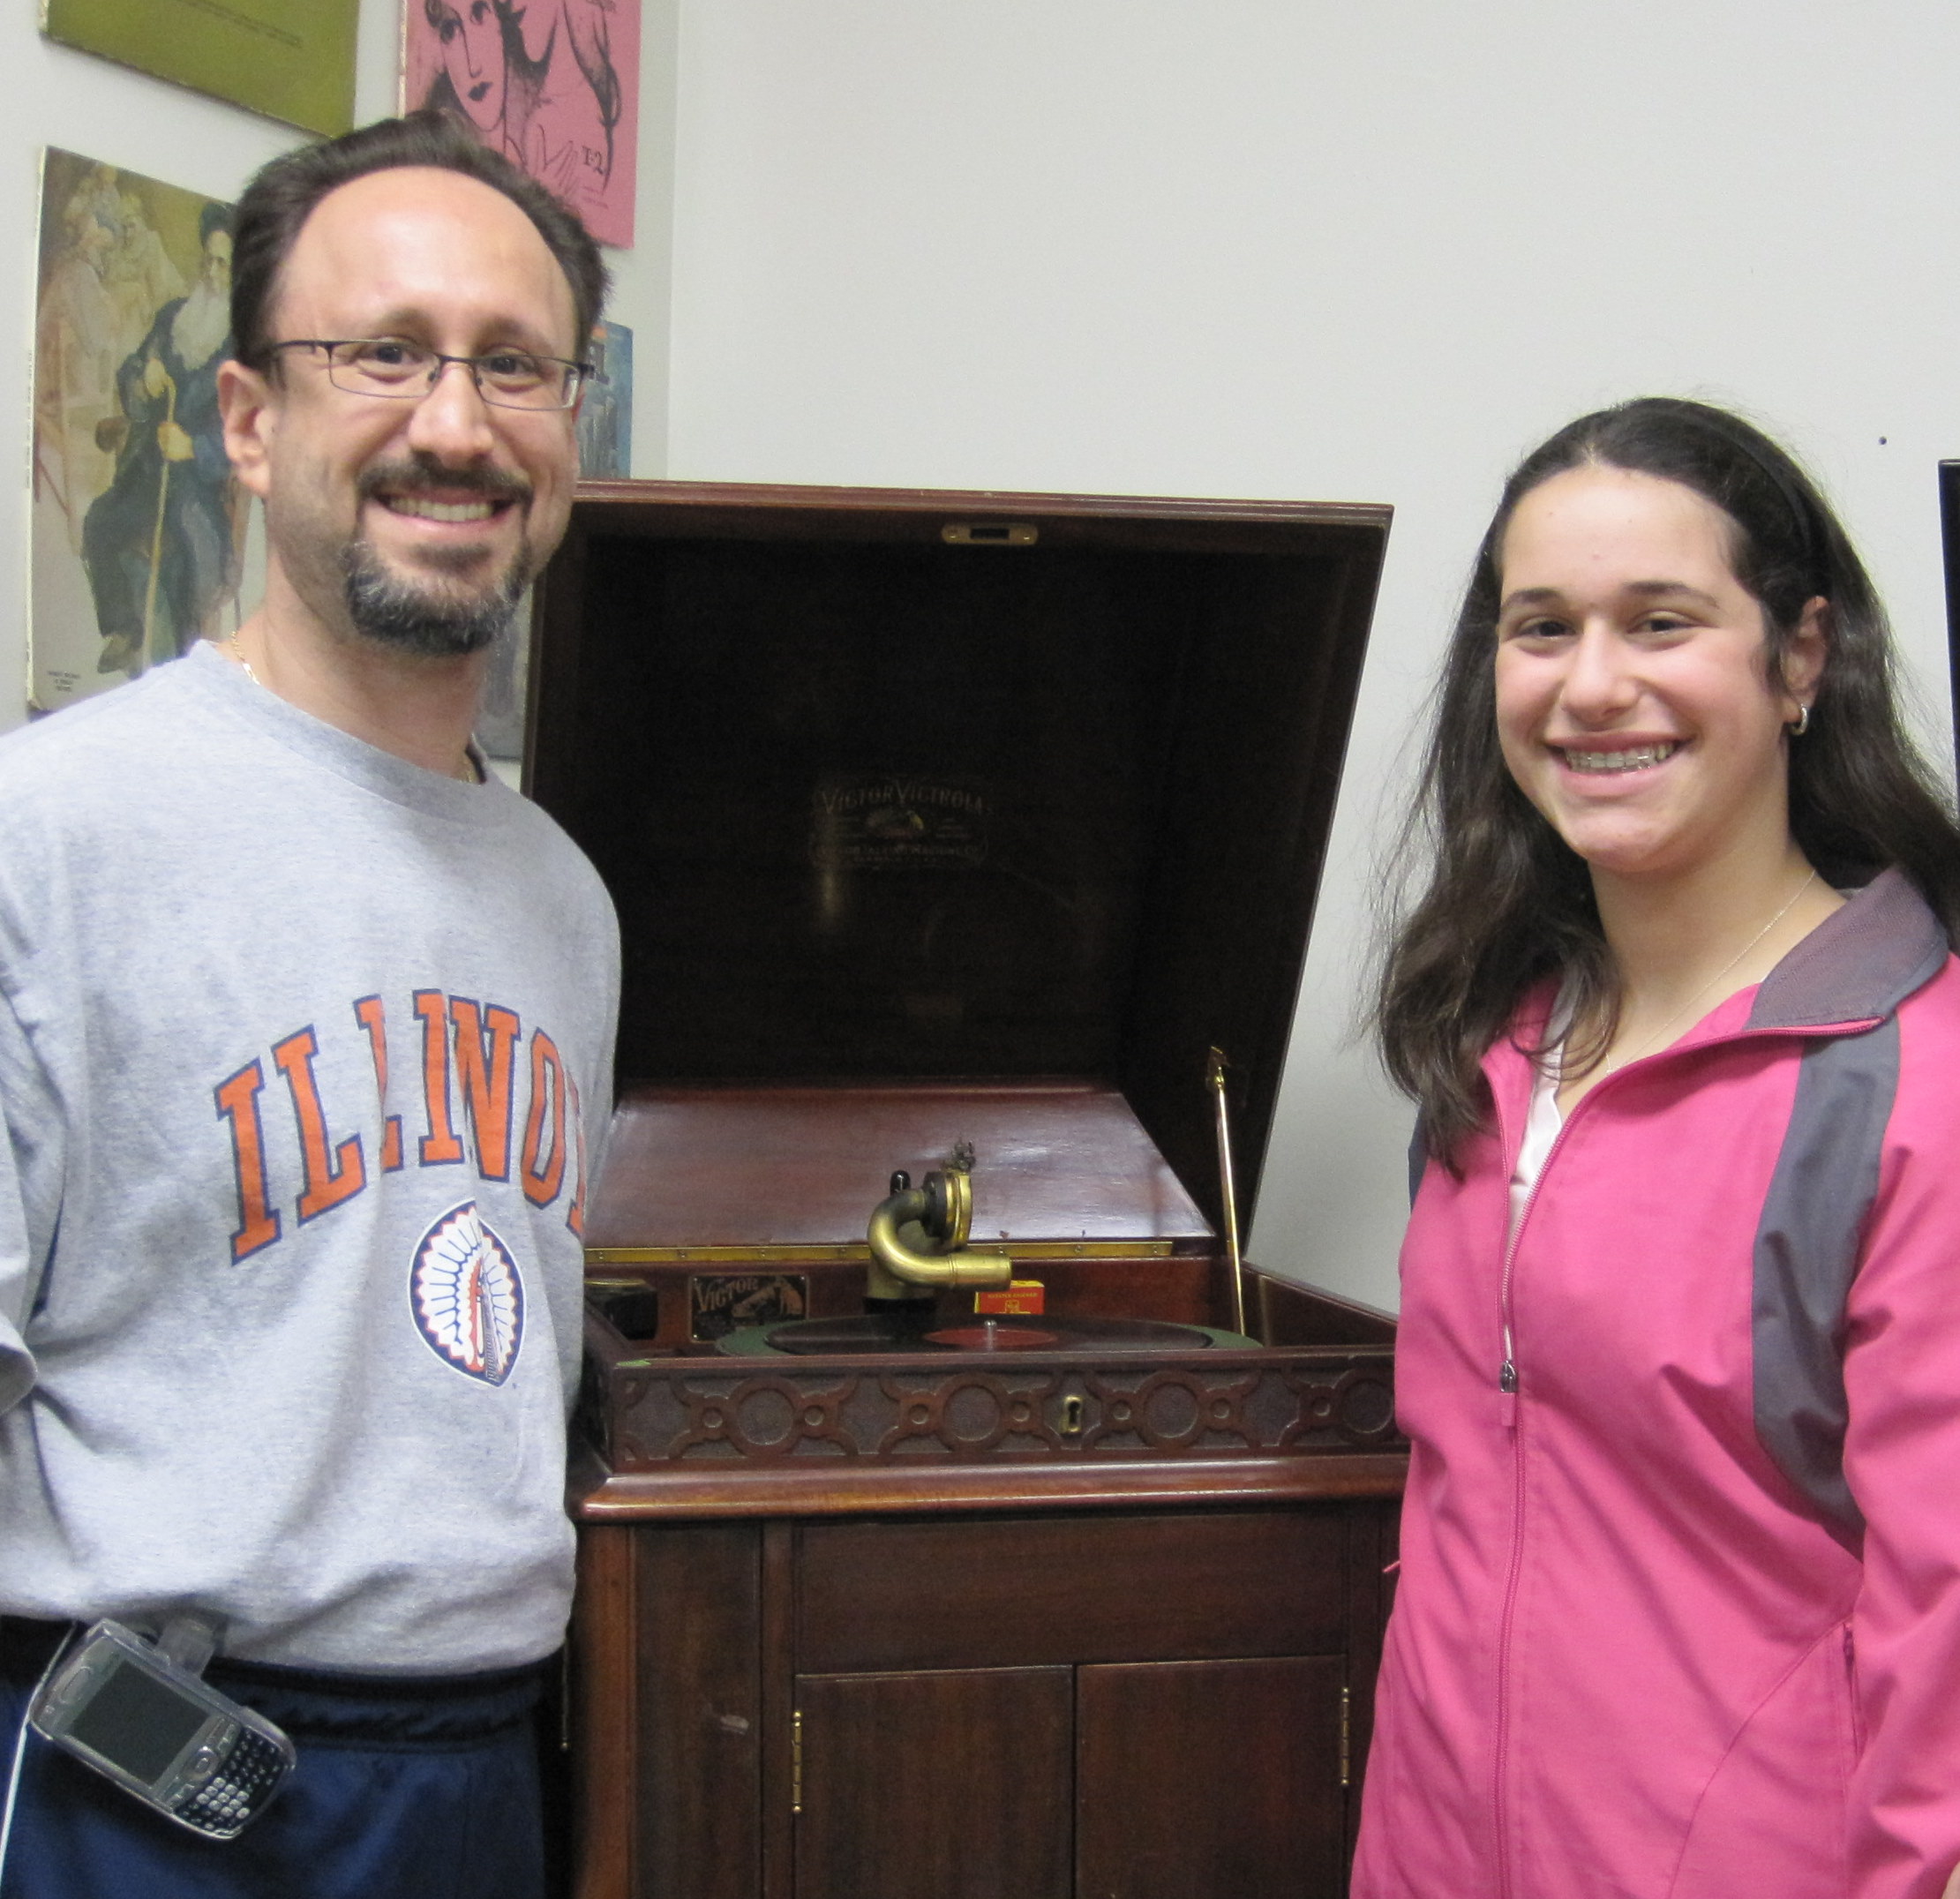 Ari and Ben Goldstein admire vintage Victrola at JSA